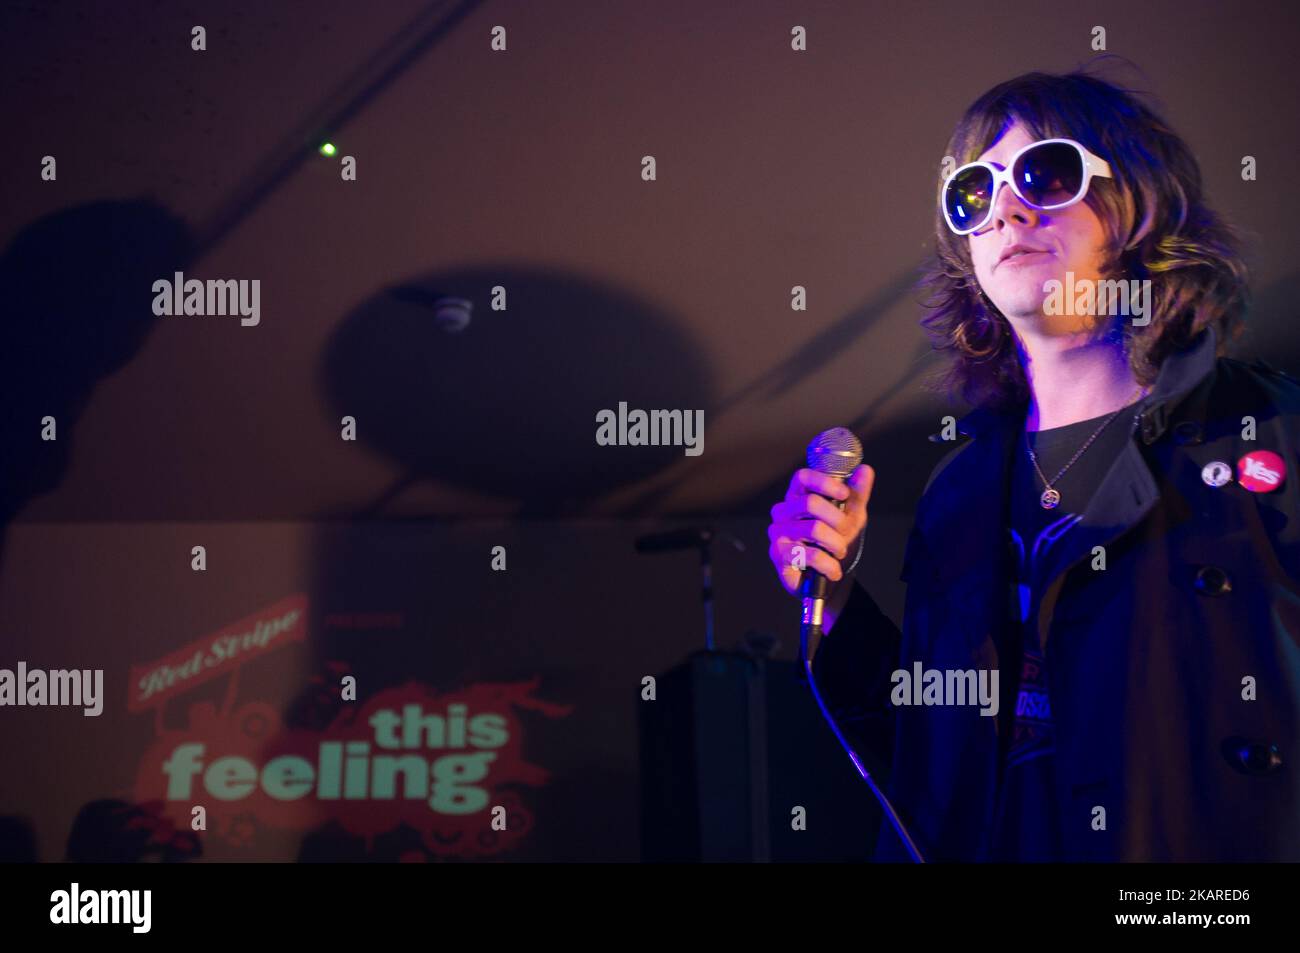 Band psichedelica indie britannica la Shimmer Band è stata vista sul palco mentre si esibiva a Nambucca, a Londra, il 19 settembre 2017. La Shimmer Band inizierà il suo primo tour nel Regno Unito. (Foto di Alberto Pezzali/NurPhoto) Foto Stock